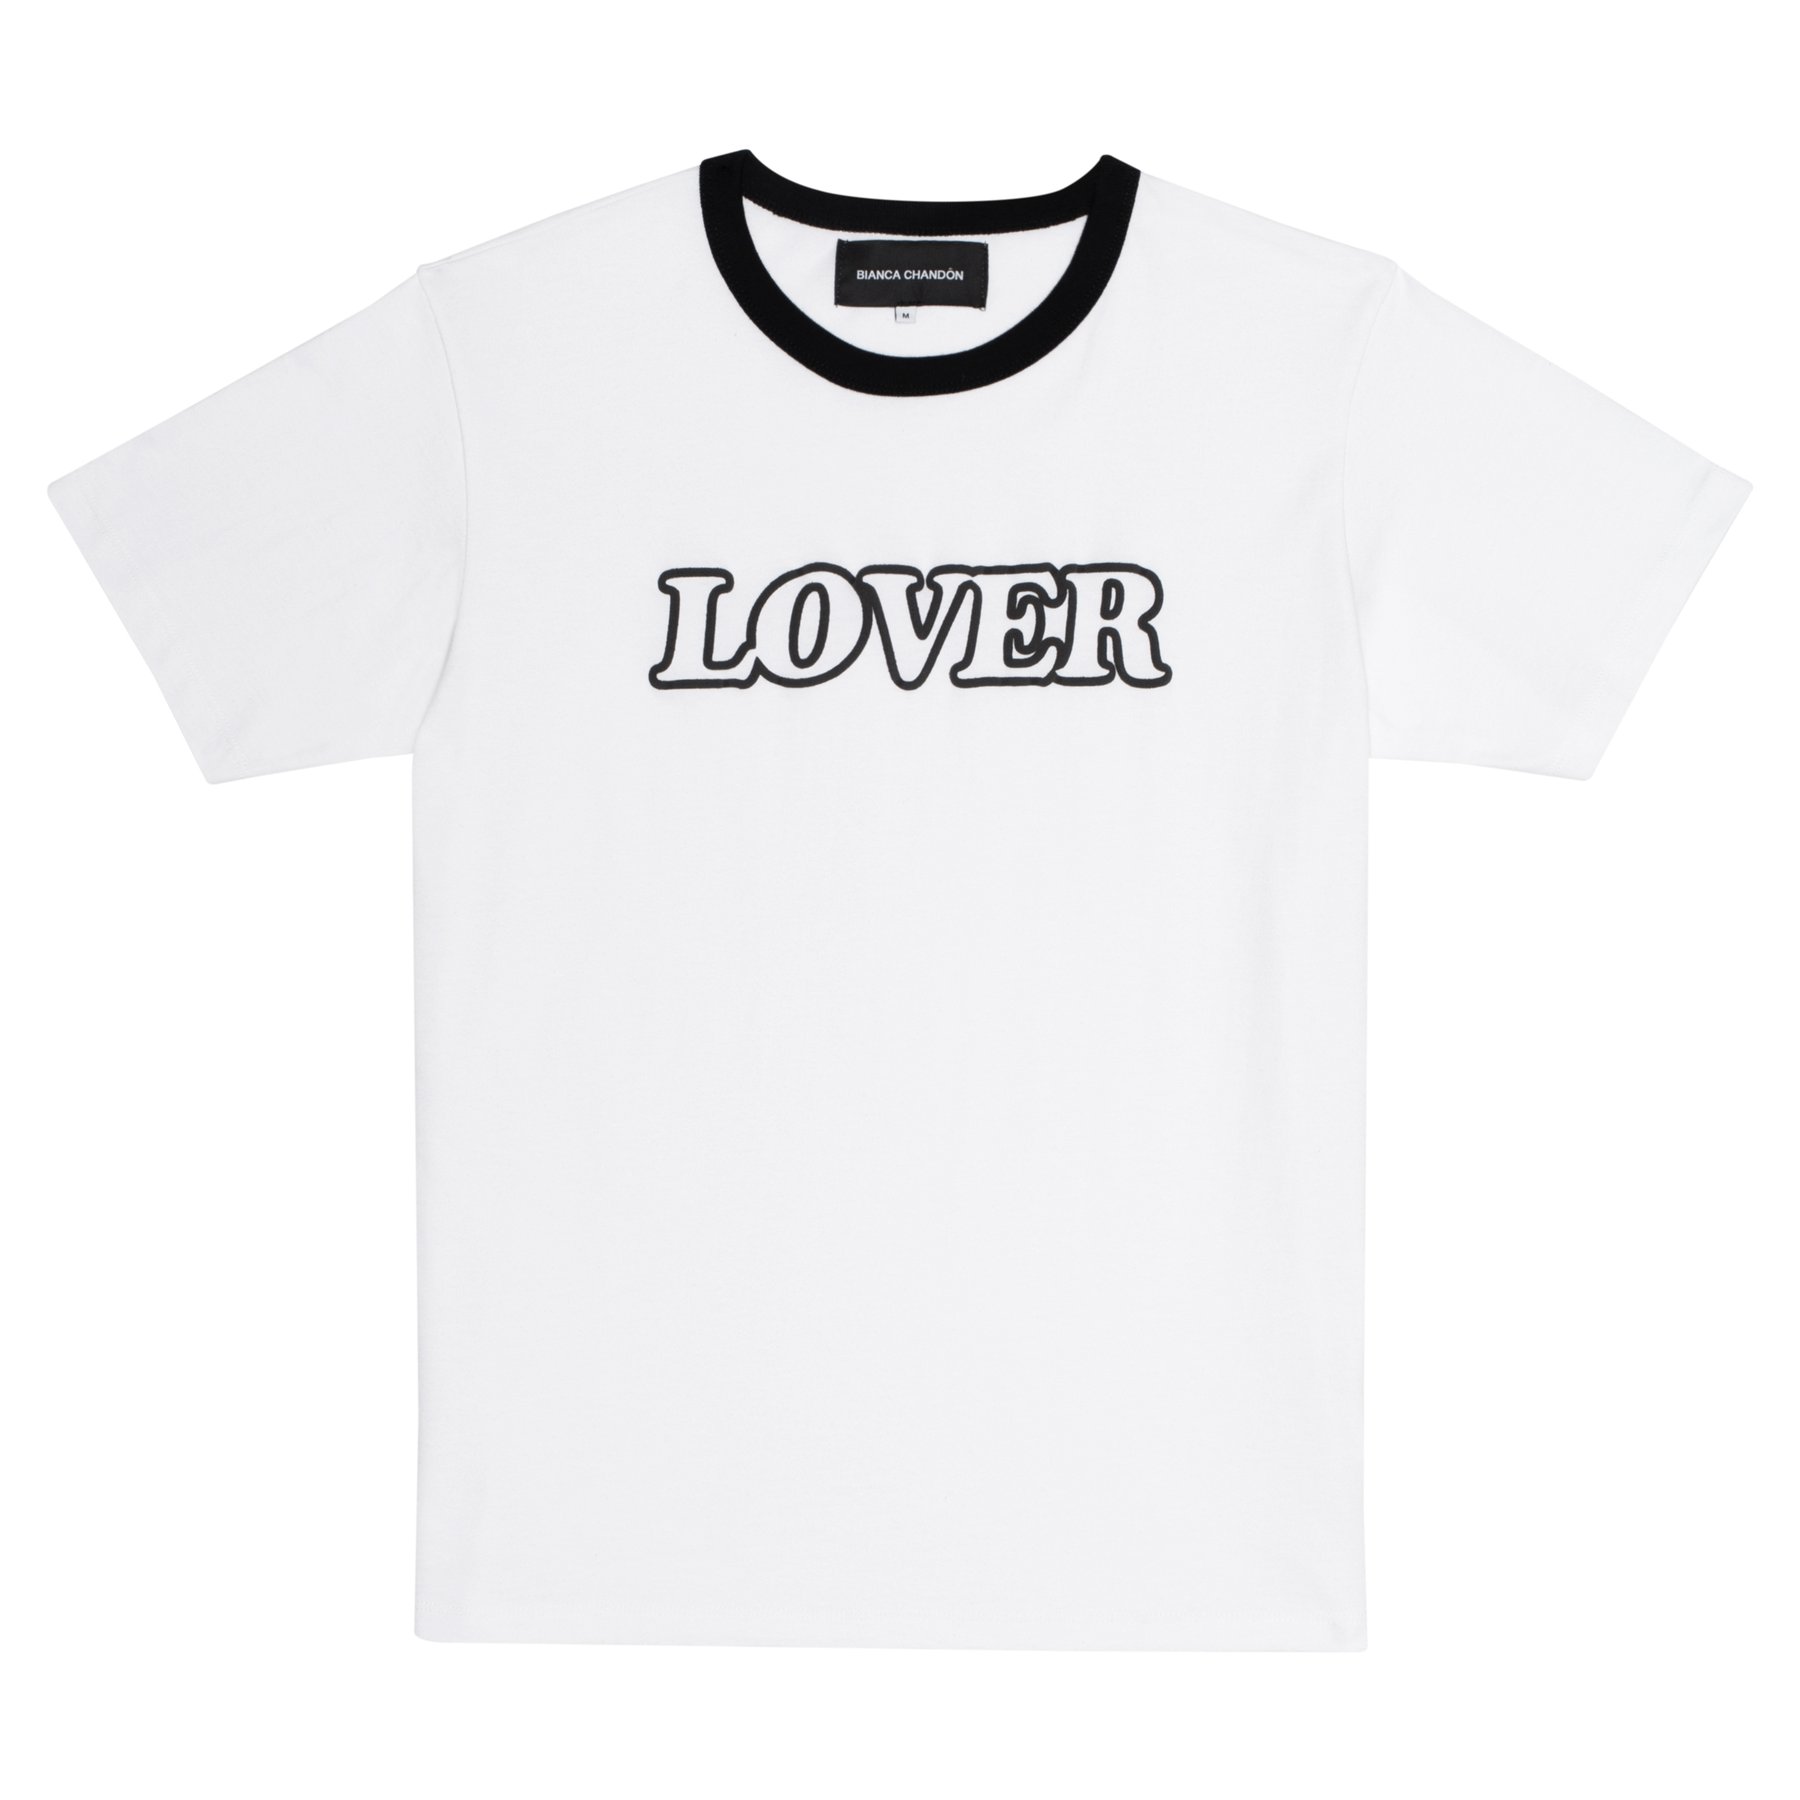 Bianca Chandon Lover Ringer T-Shirt White/Black Men's - US